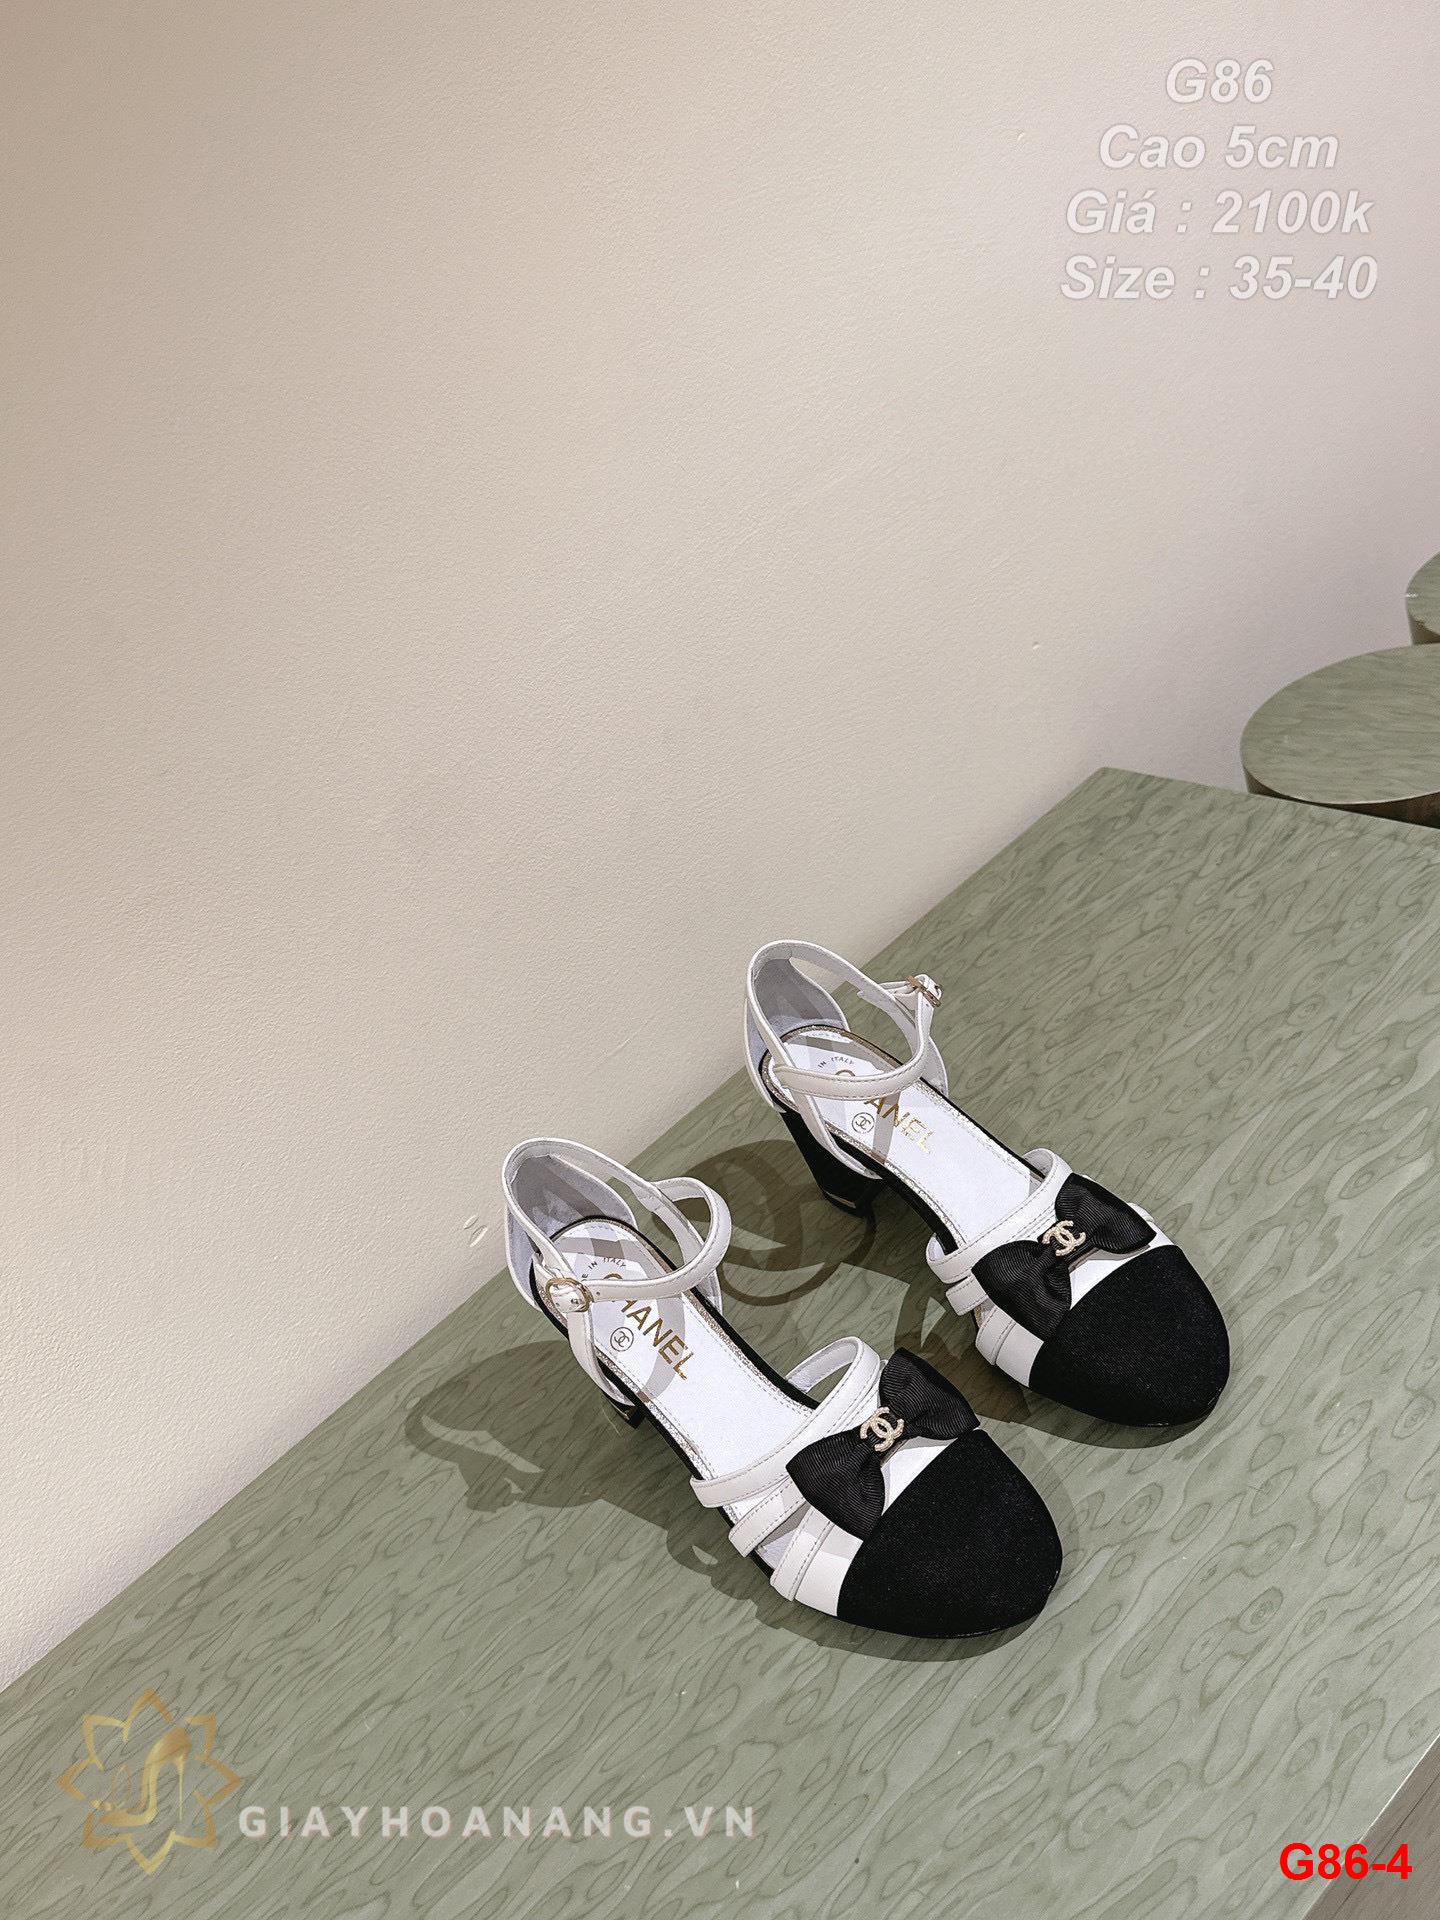 G86-4 Chanel sandal cao gót 5cm siêu cấp